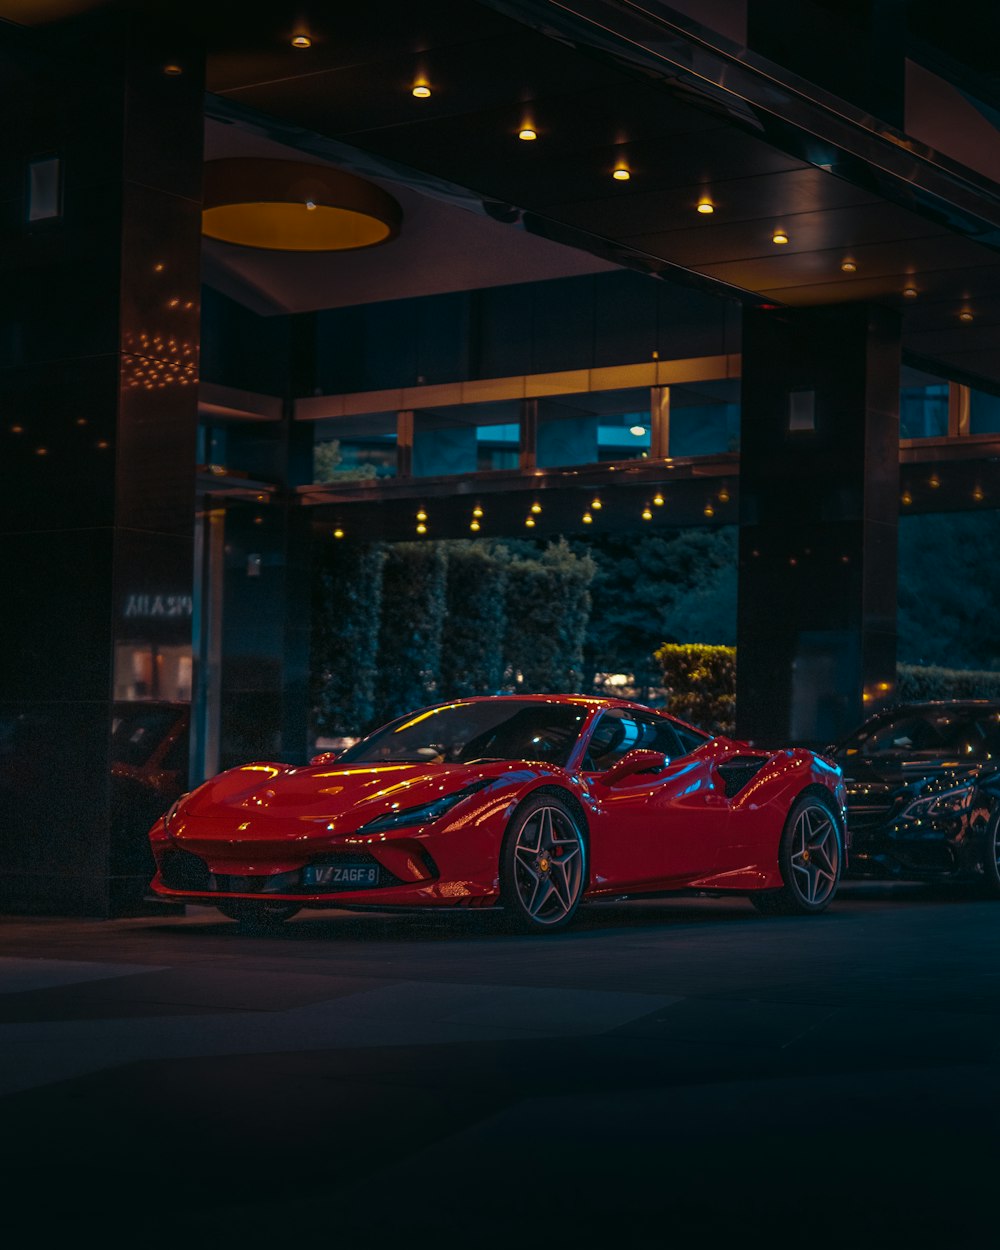 Fonds d'écran Ferrari: Téléchargement HD gratuit [500+ HQ] | Unsplash